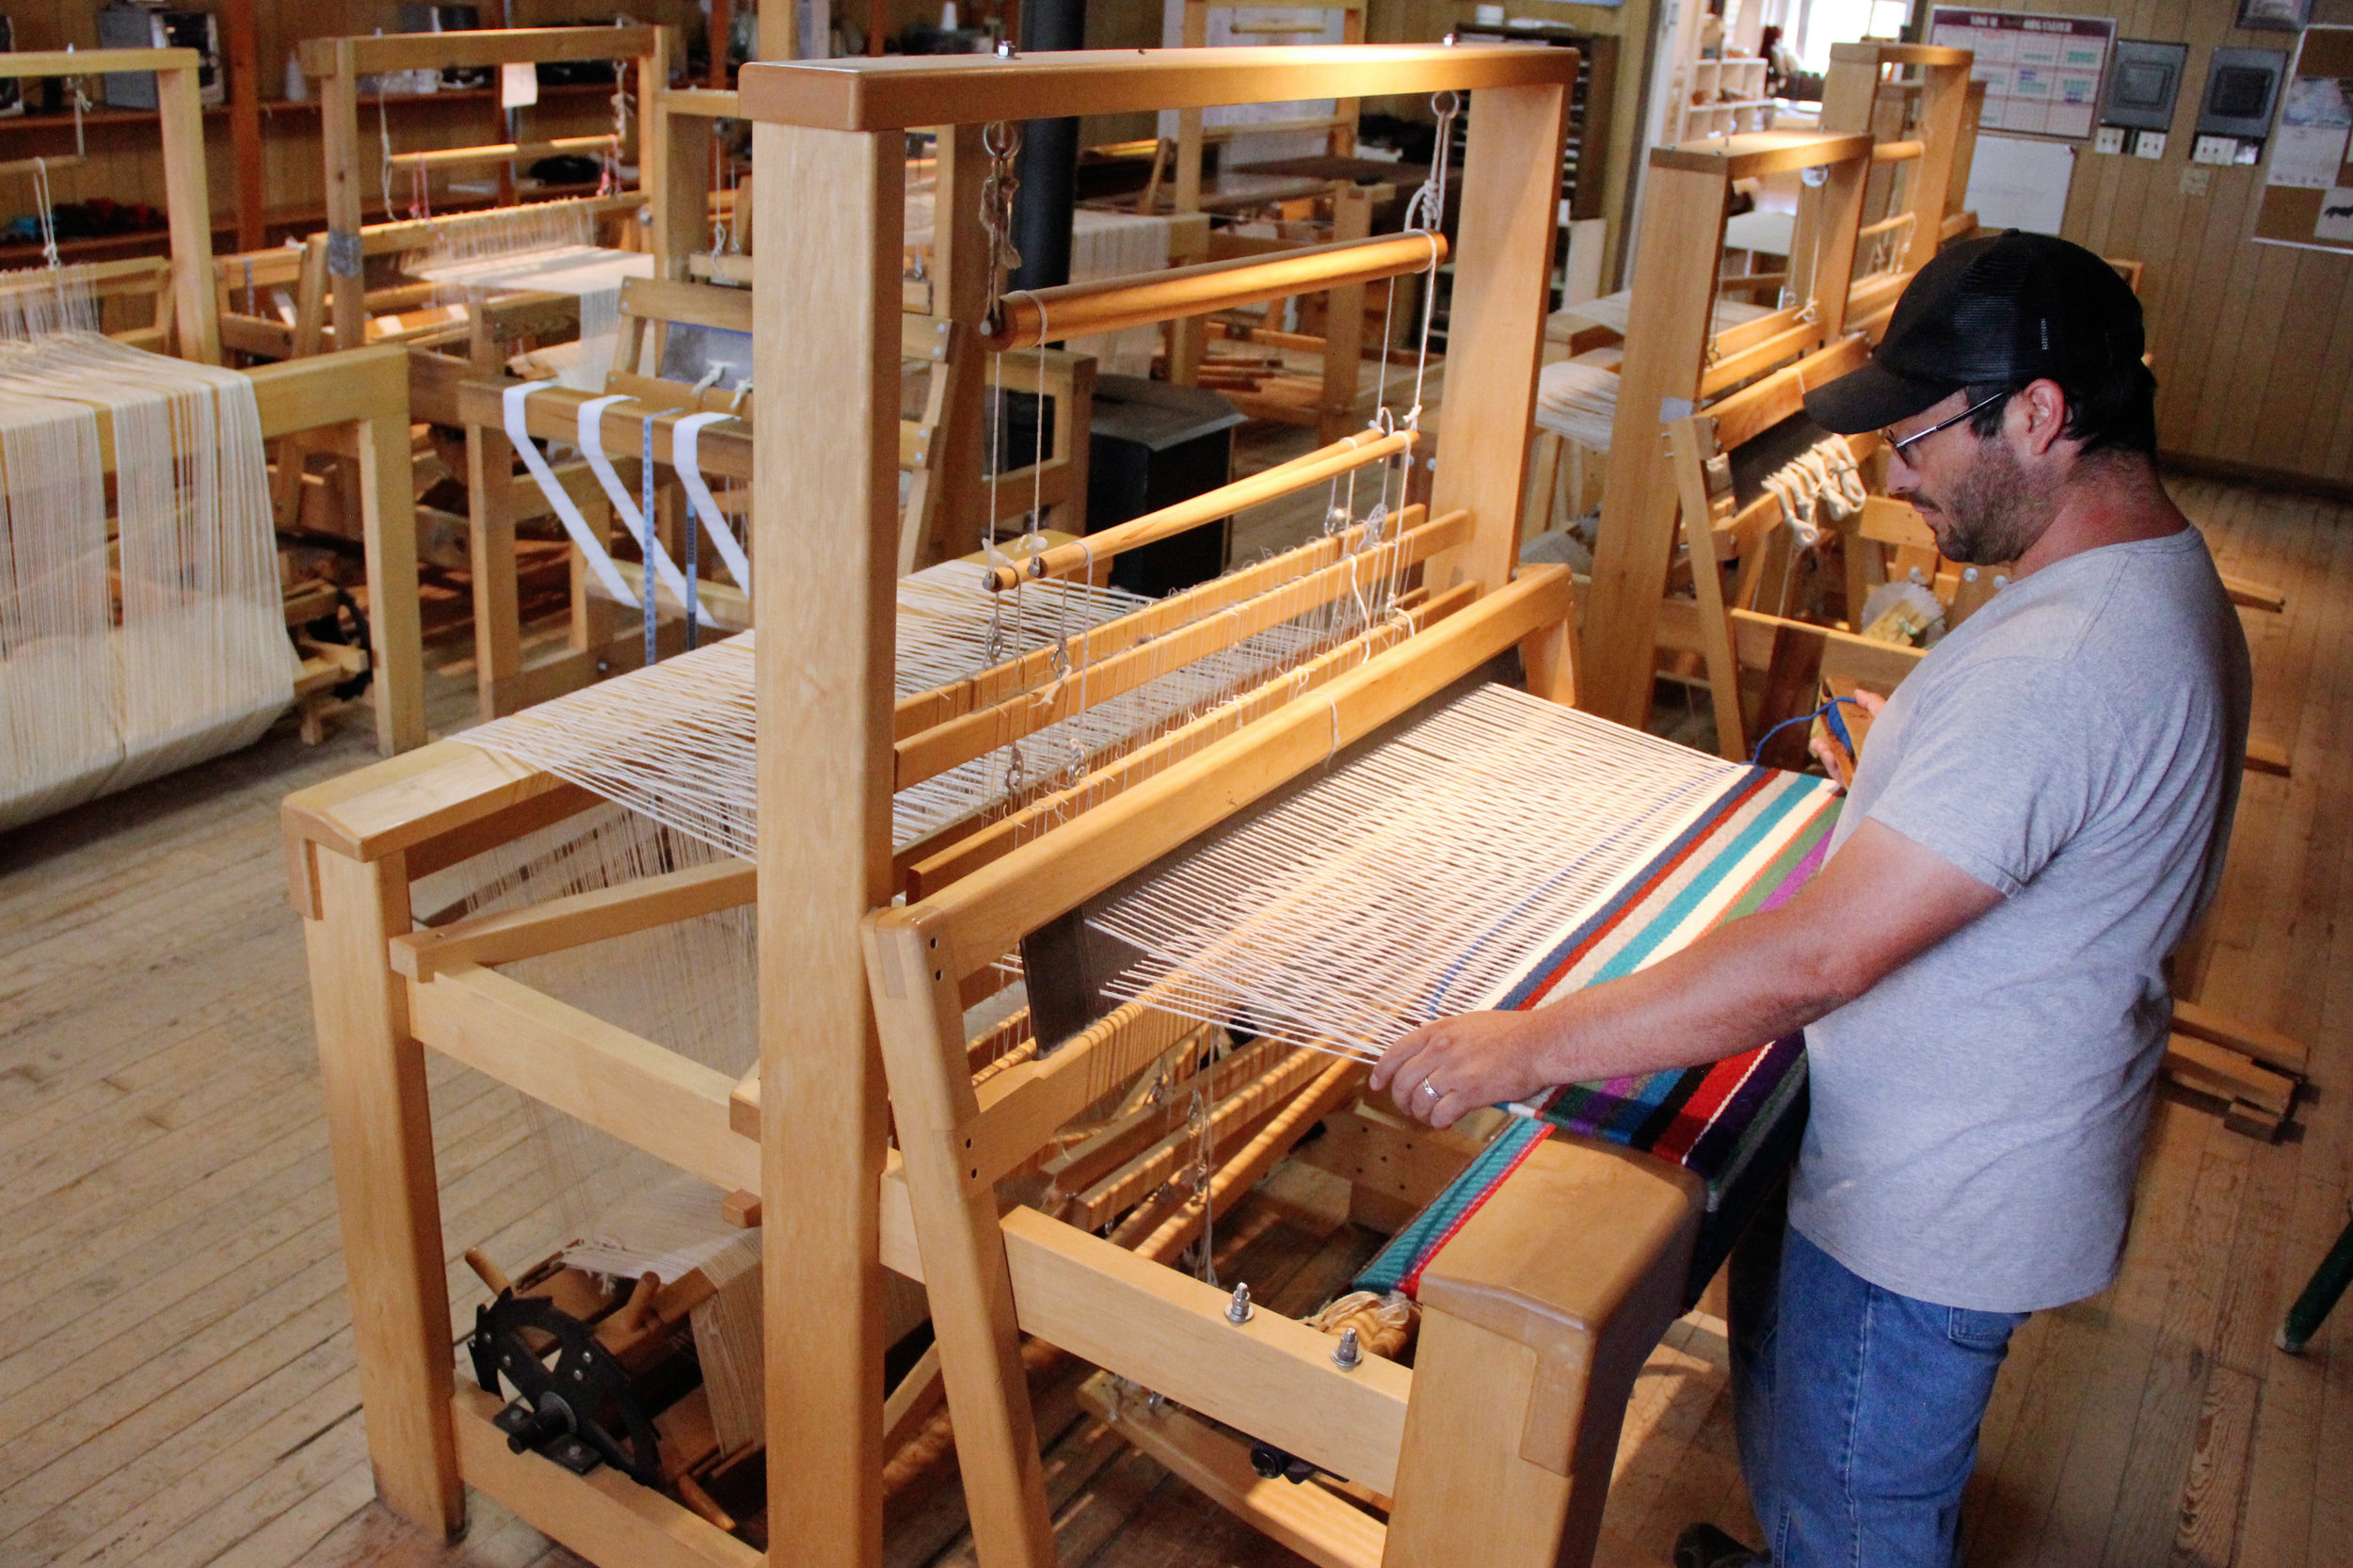 Weaving loom - Goki America